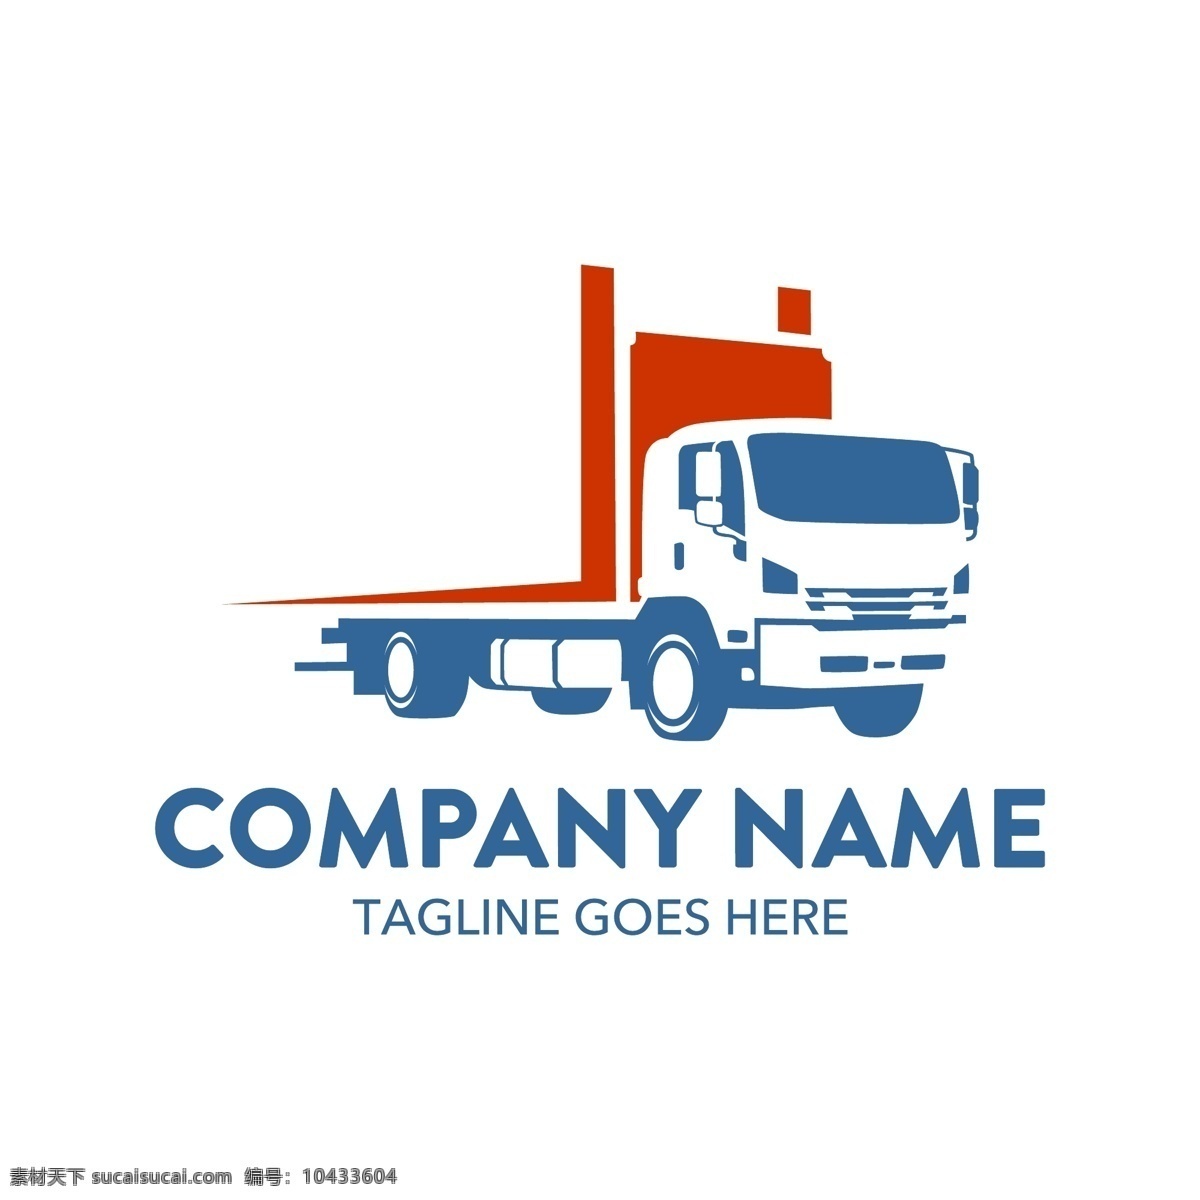 搬家公司 图形 logo 创意 广告 标志 汽车 矢量素材 简约 宣传 设计素材